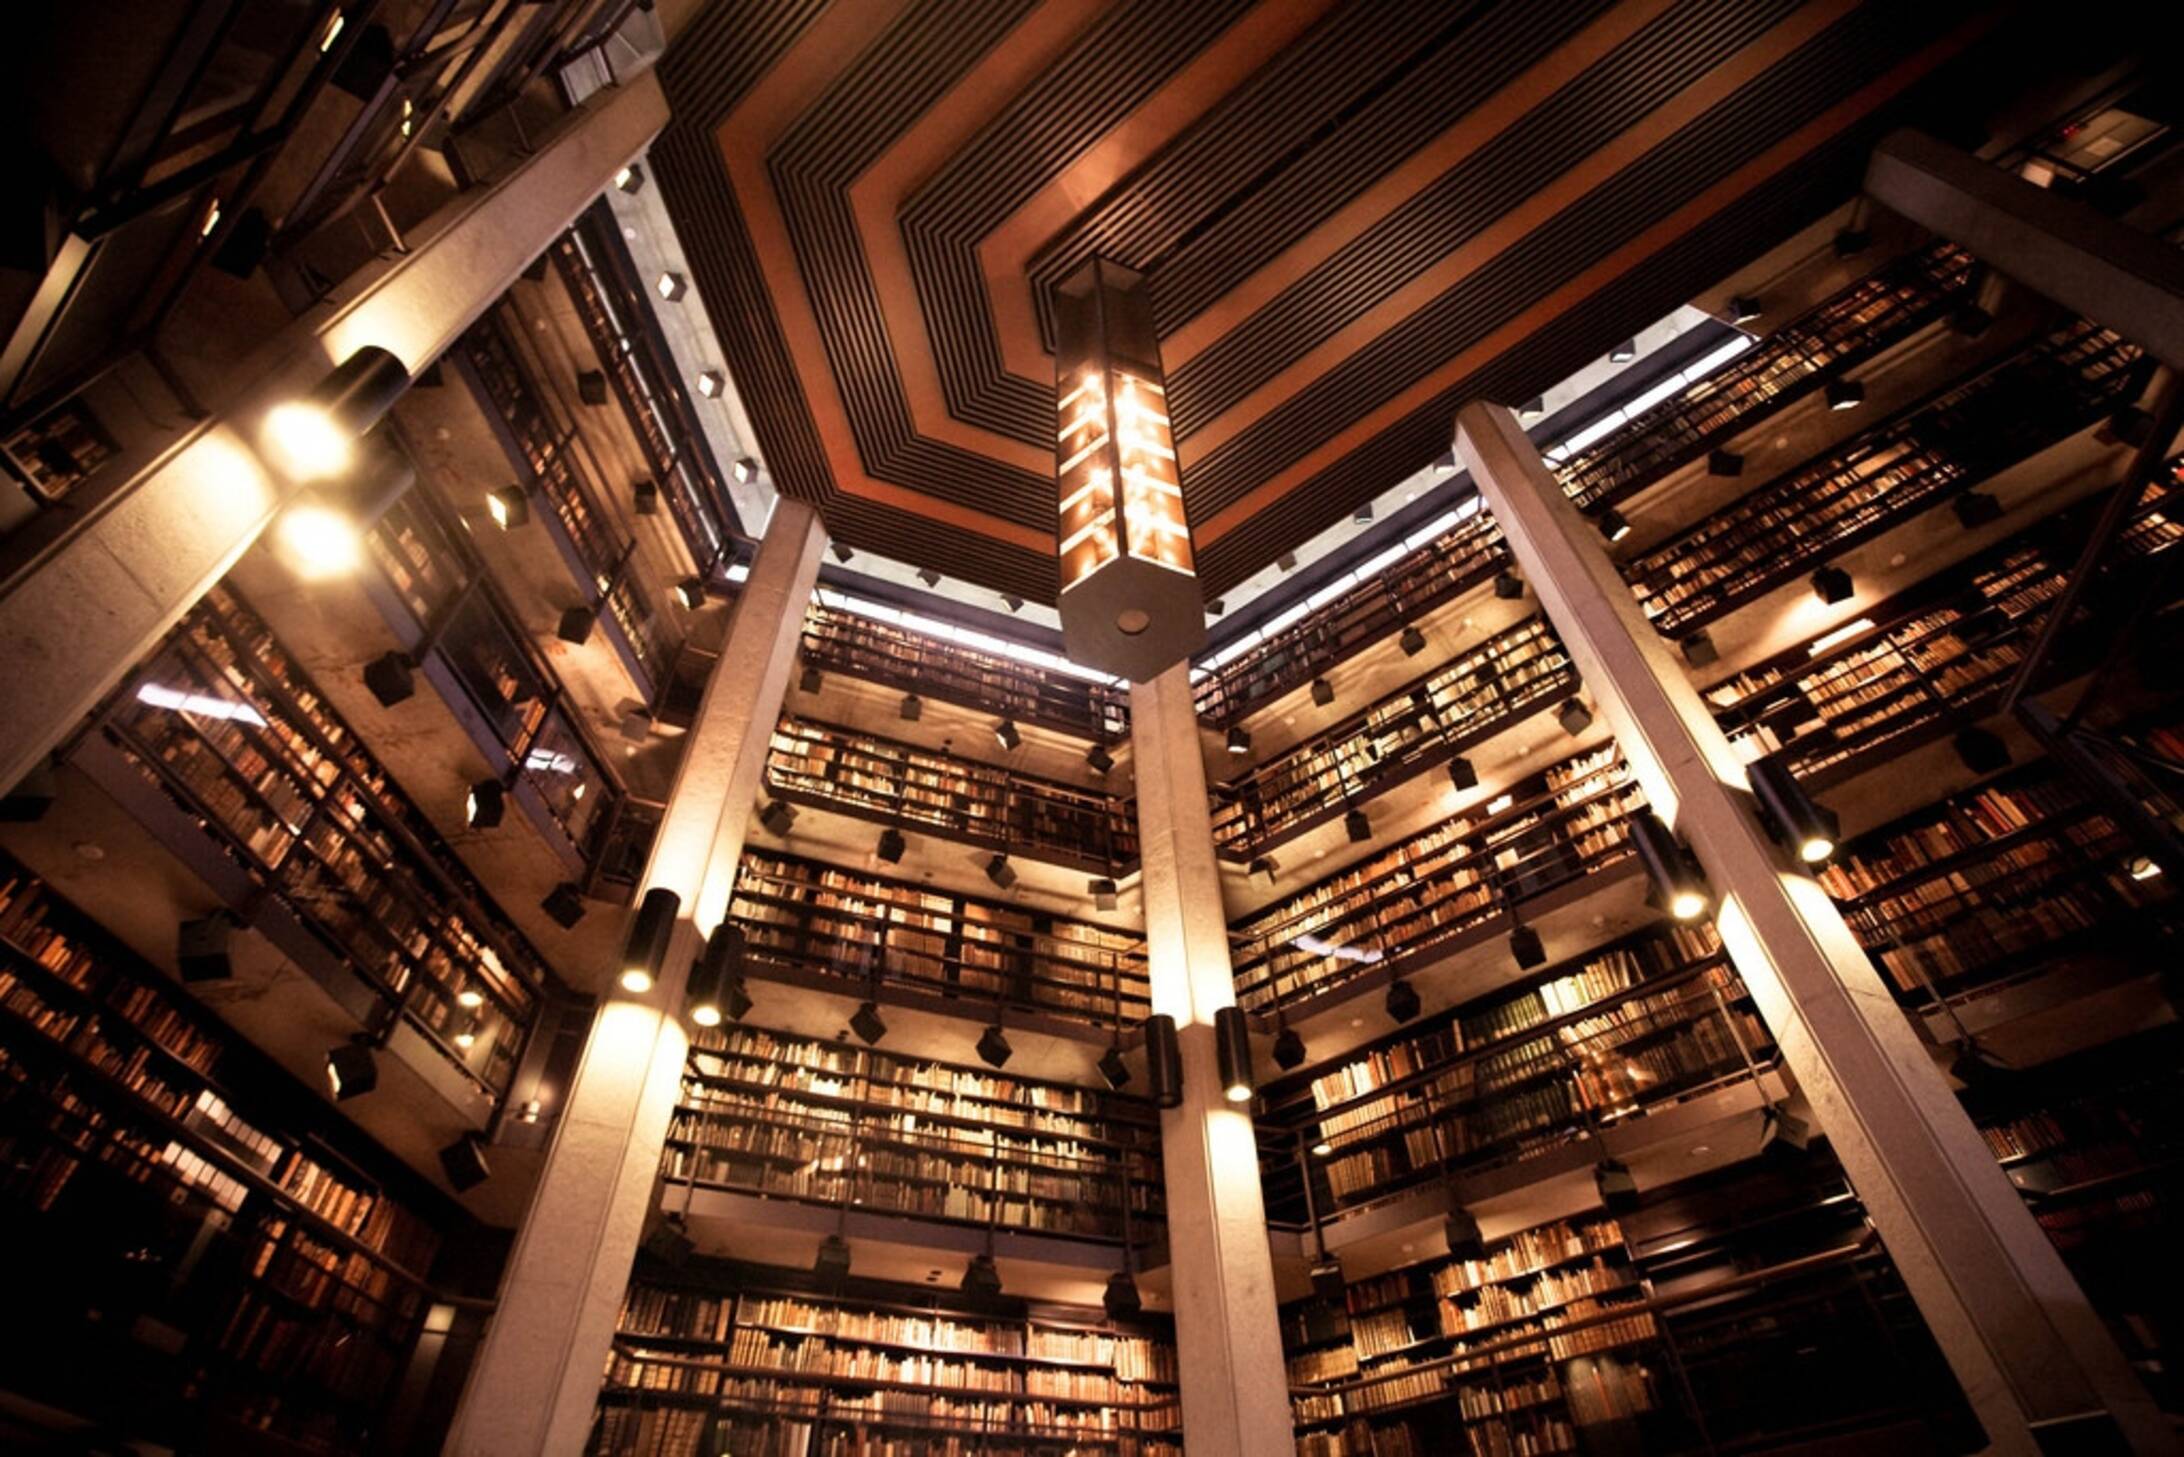 Library rld. Библиотека университета Торонто. Йельский университет библиотека. Brian Kravitz библиотека. Библиотека Фишера (Fisher Library) в сиднейском университете.